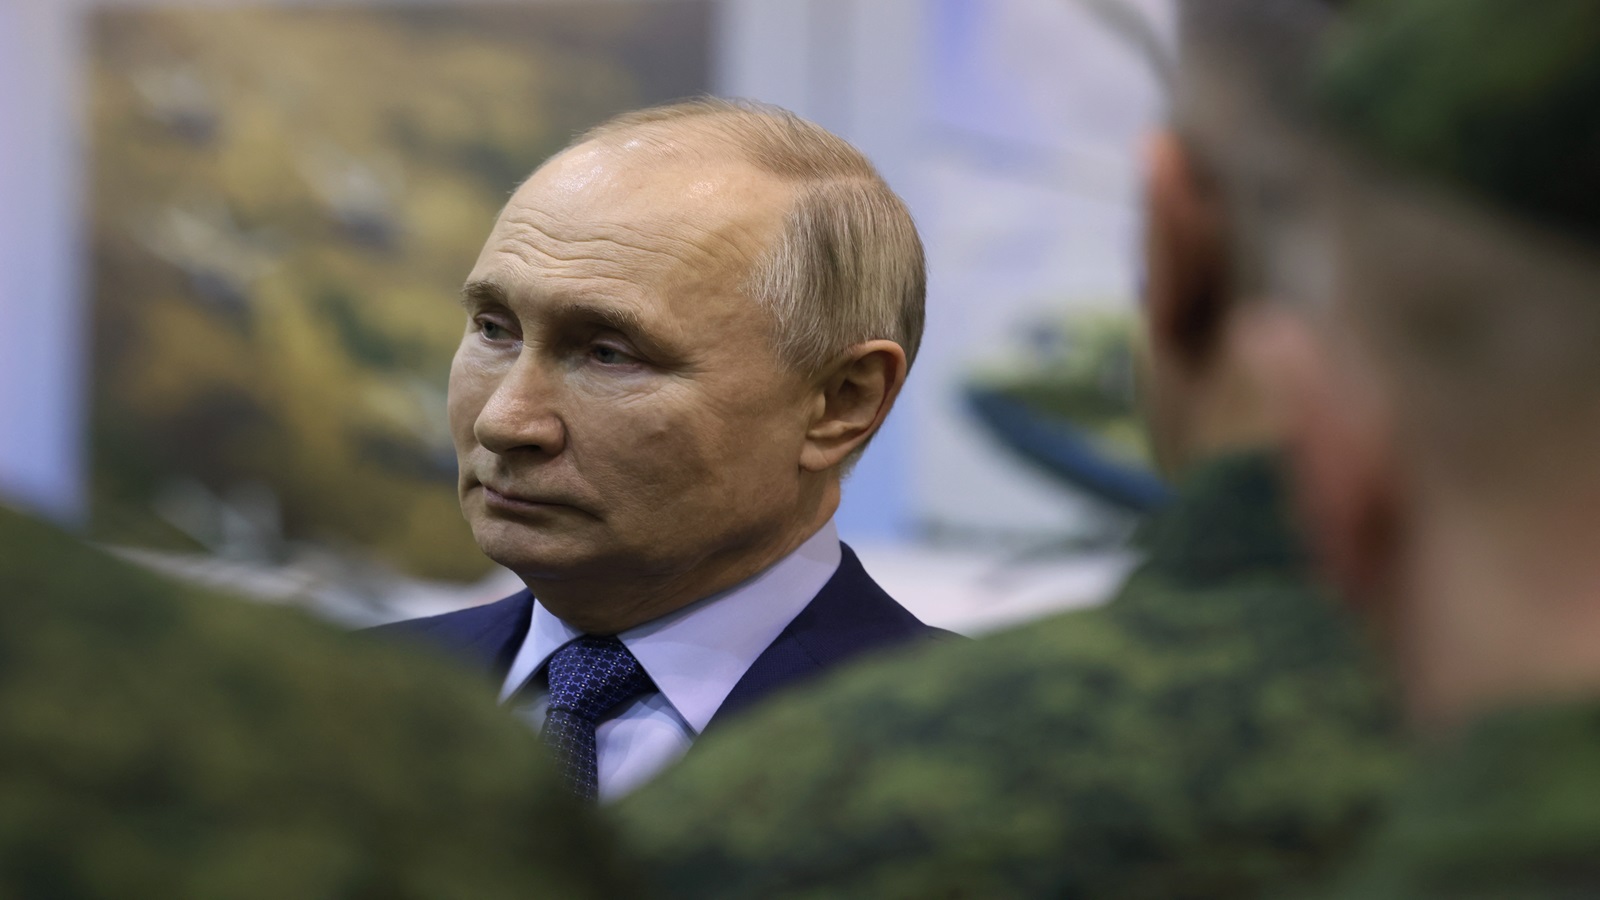 بوتين يأمر بإجراء مناورات نووية رداً على "تهديدات" غربية